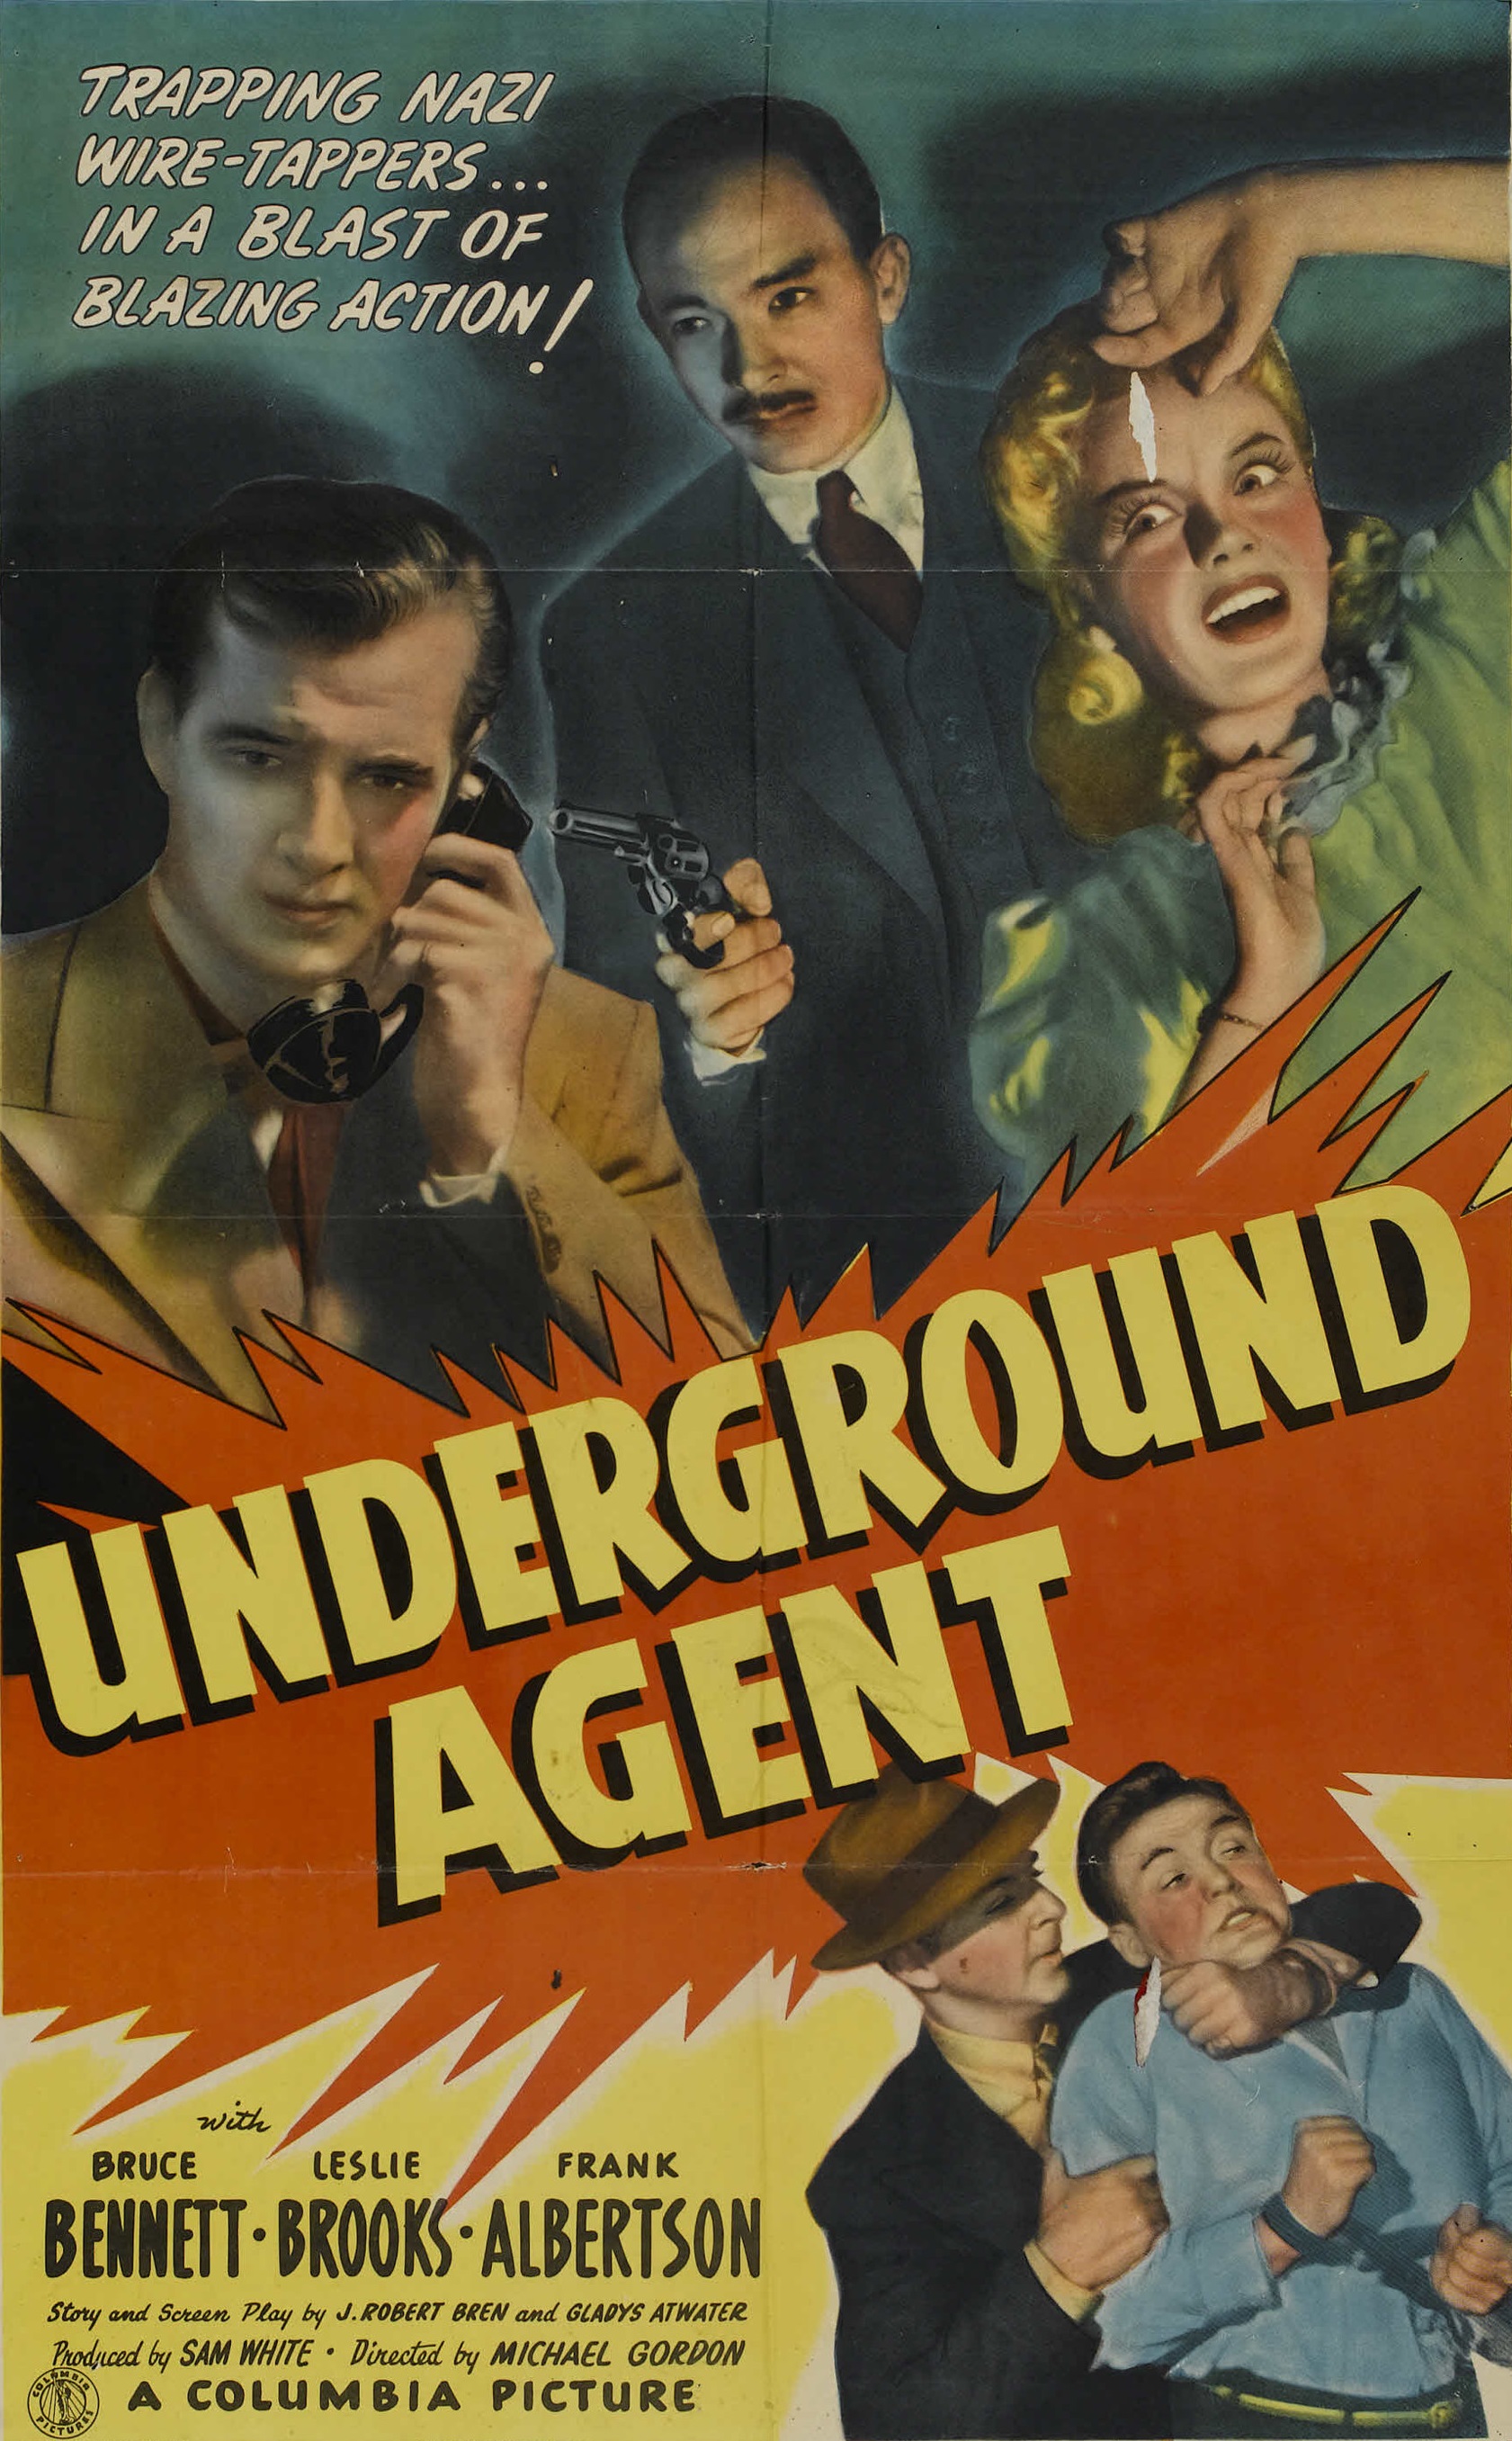 Underground Agent